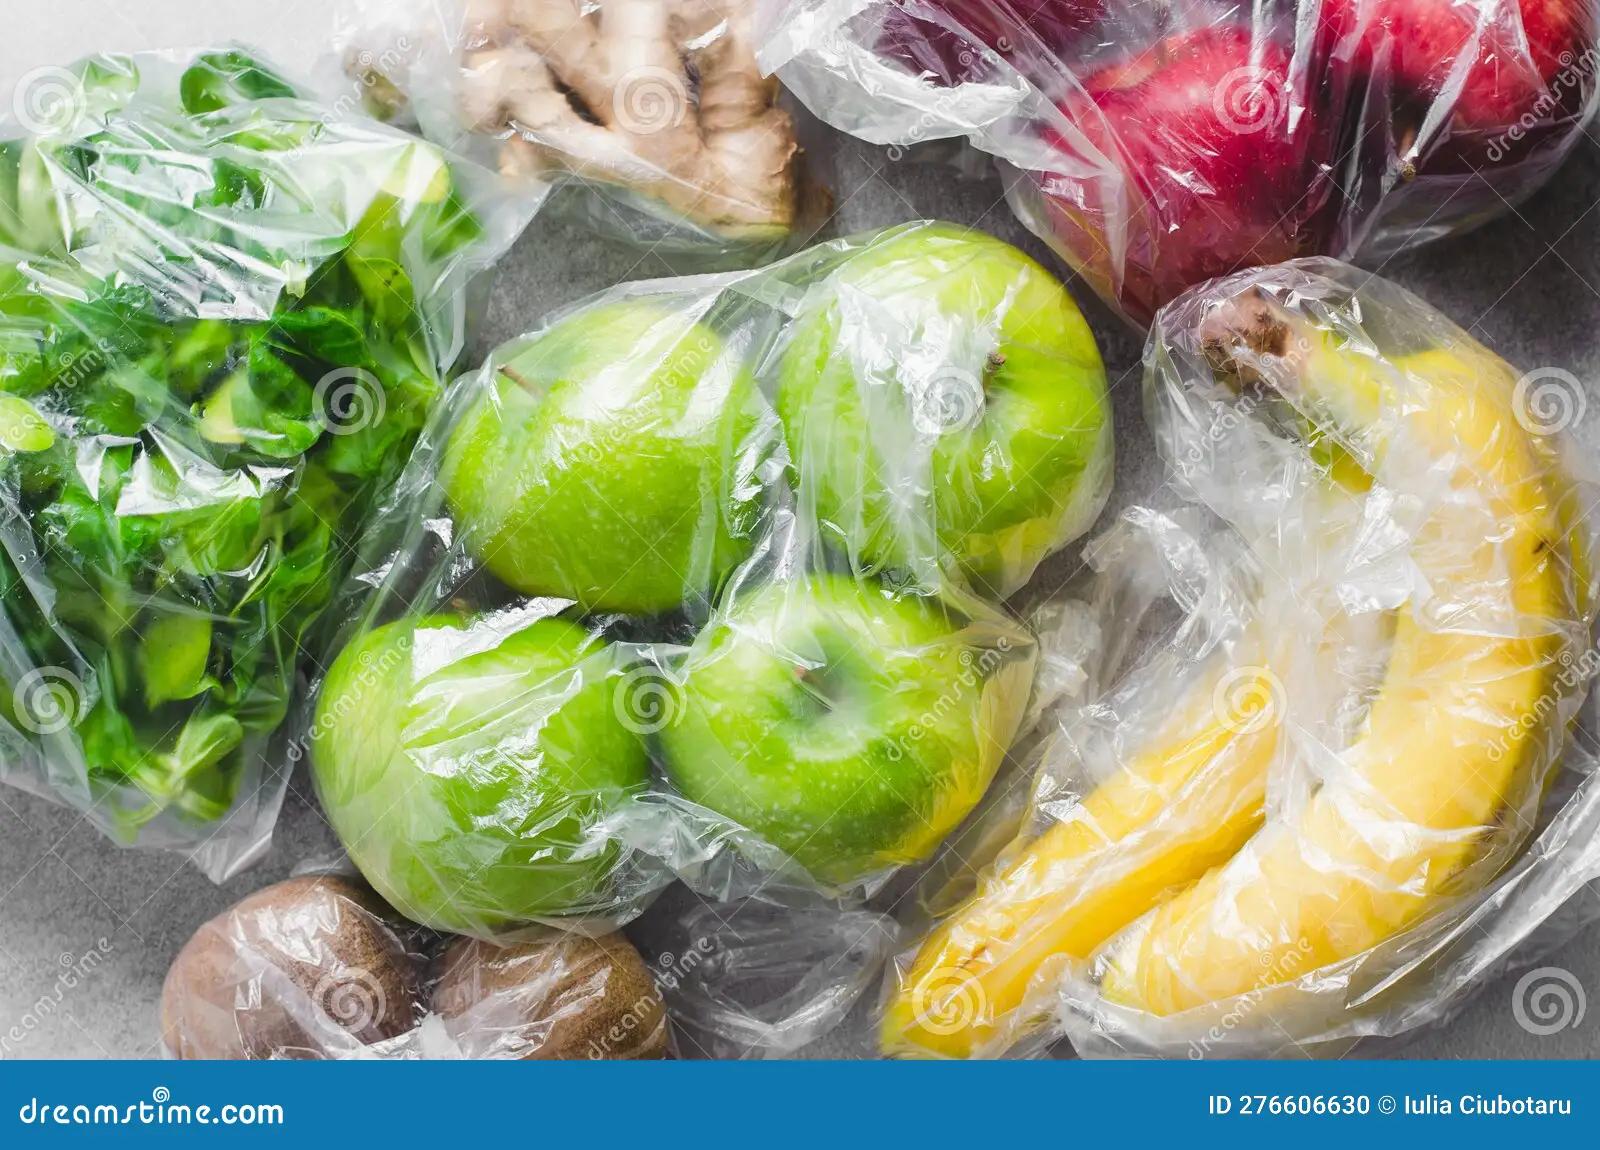 fruta en bolsa de plastico - Cómo es mejor guardar las verduras en el refrigerador con bolsa o sin bolsa